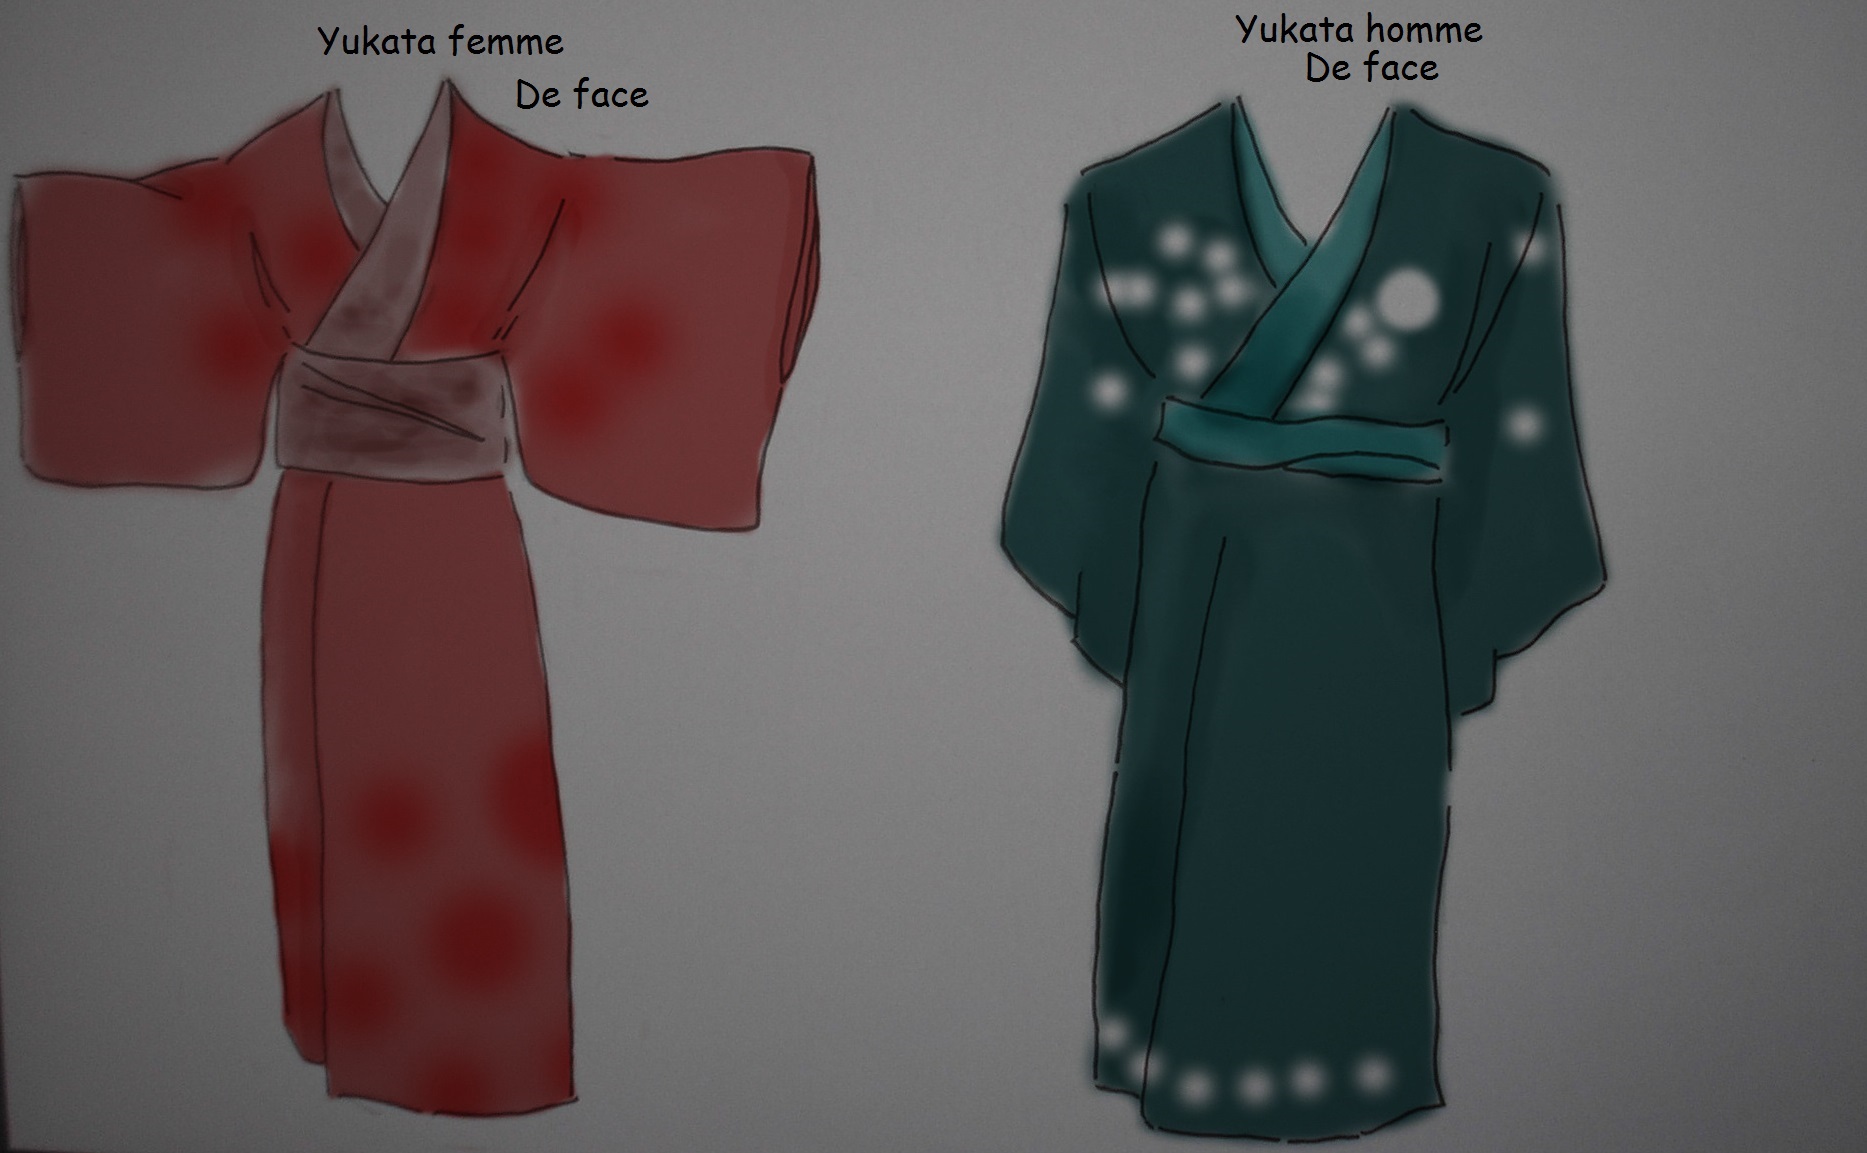 Les habits traditionnels japonais - Apprendre la bande dessinée et le manga!